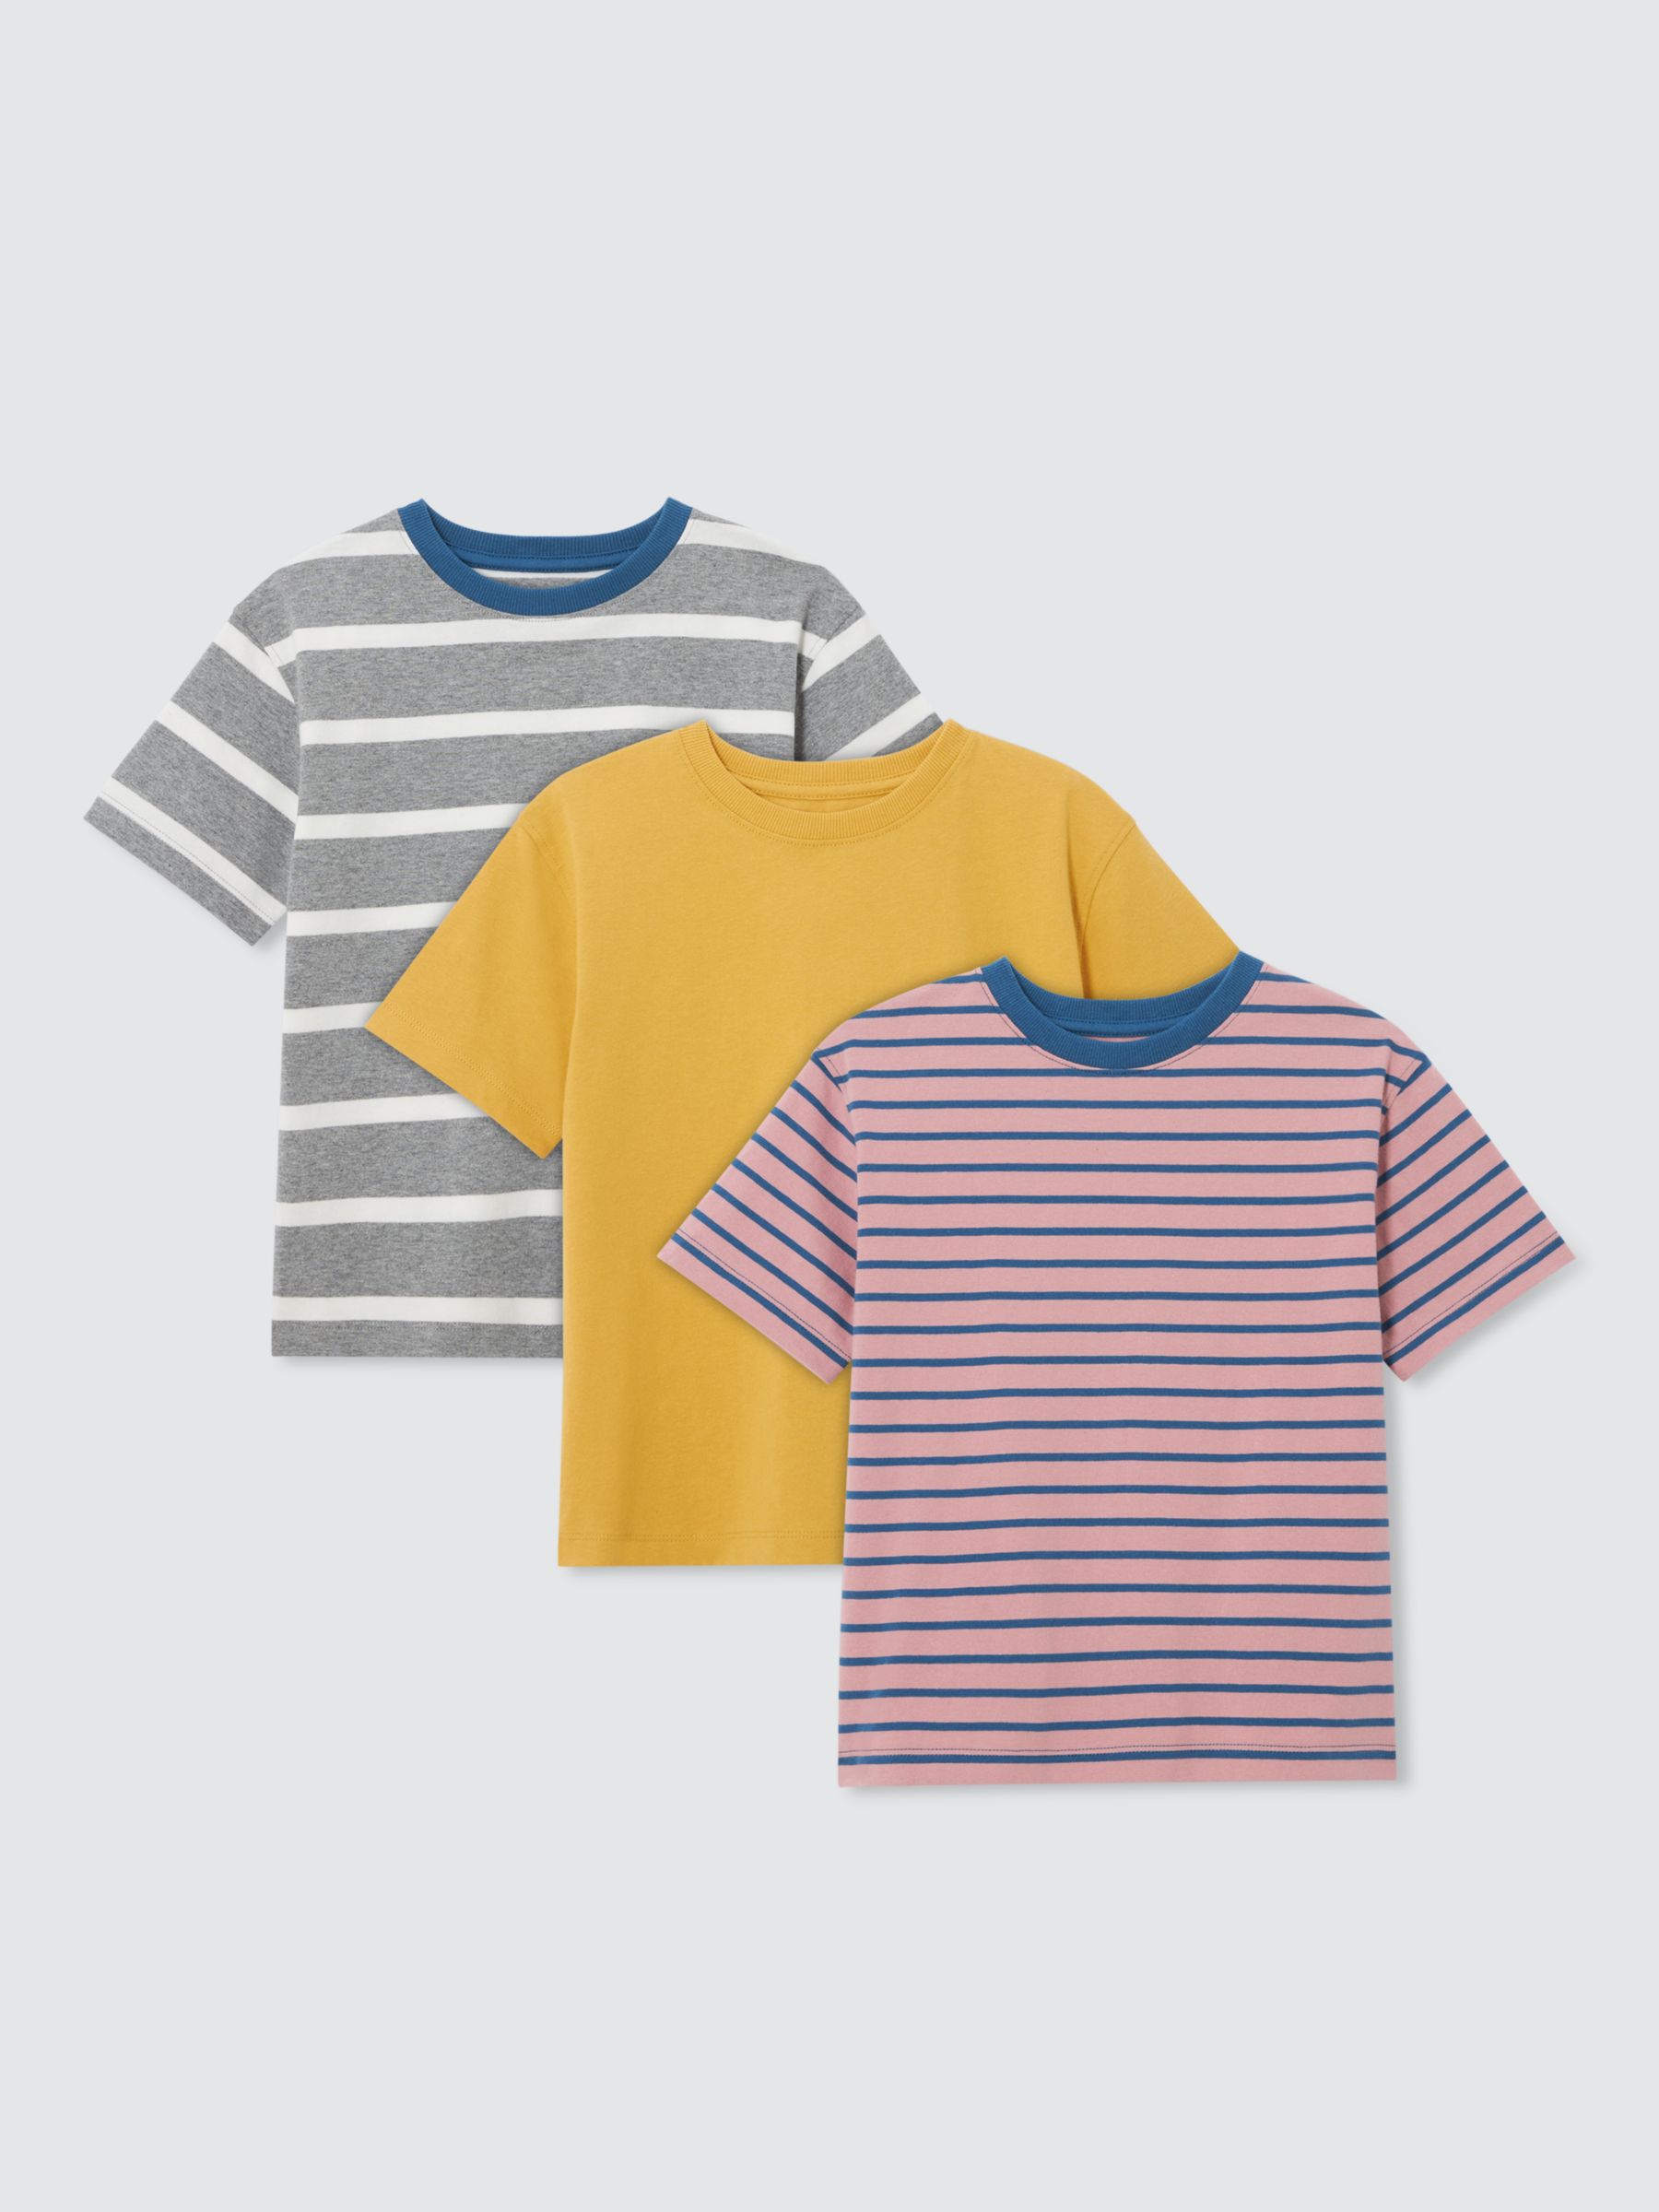 John Lewis Kids' Plain/Stripe T-Shirts, Pack of 3, Multi, 7 years